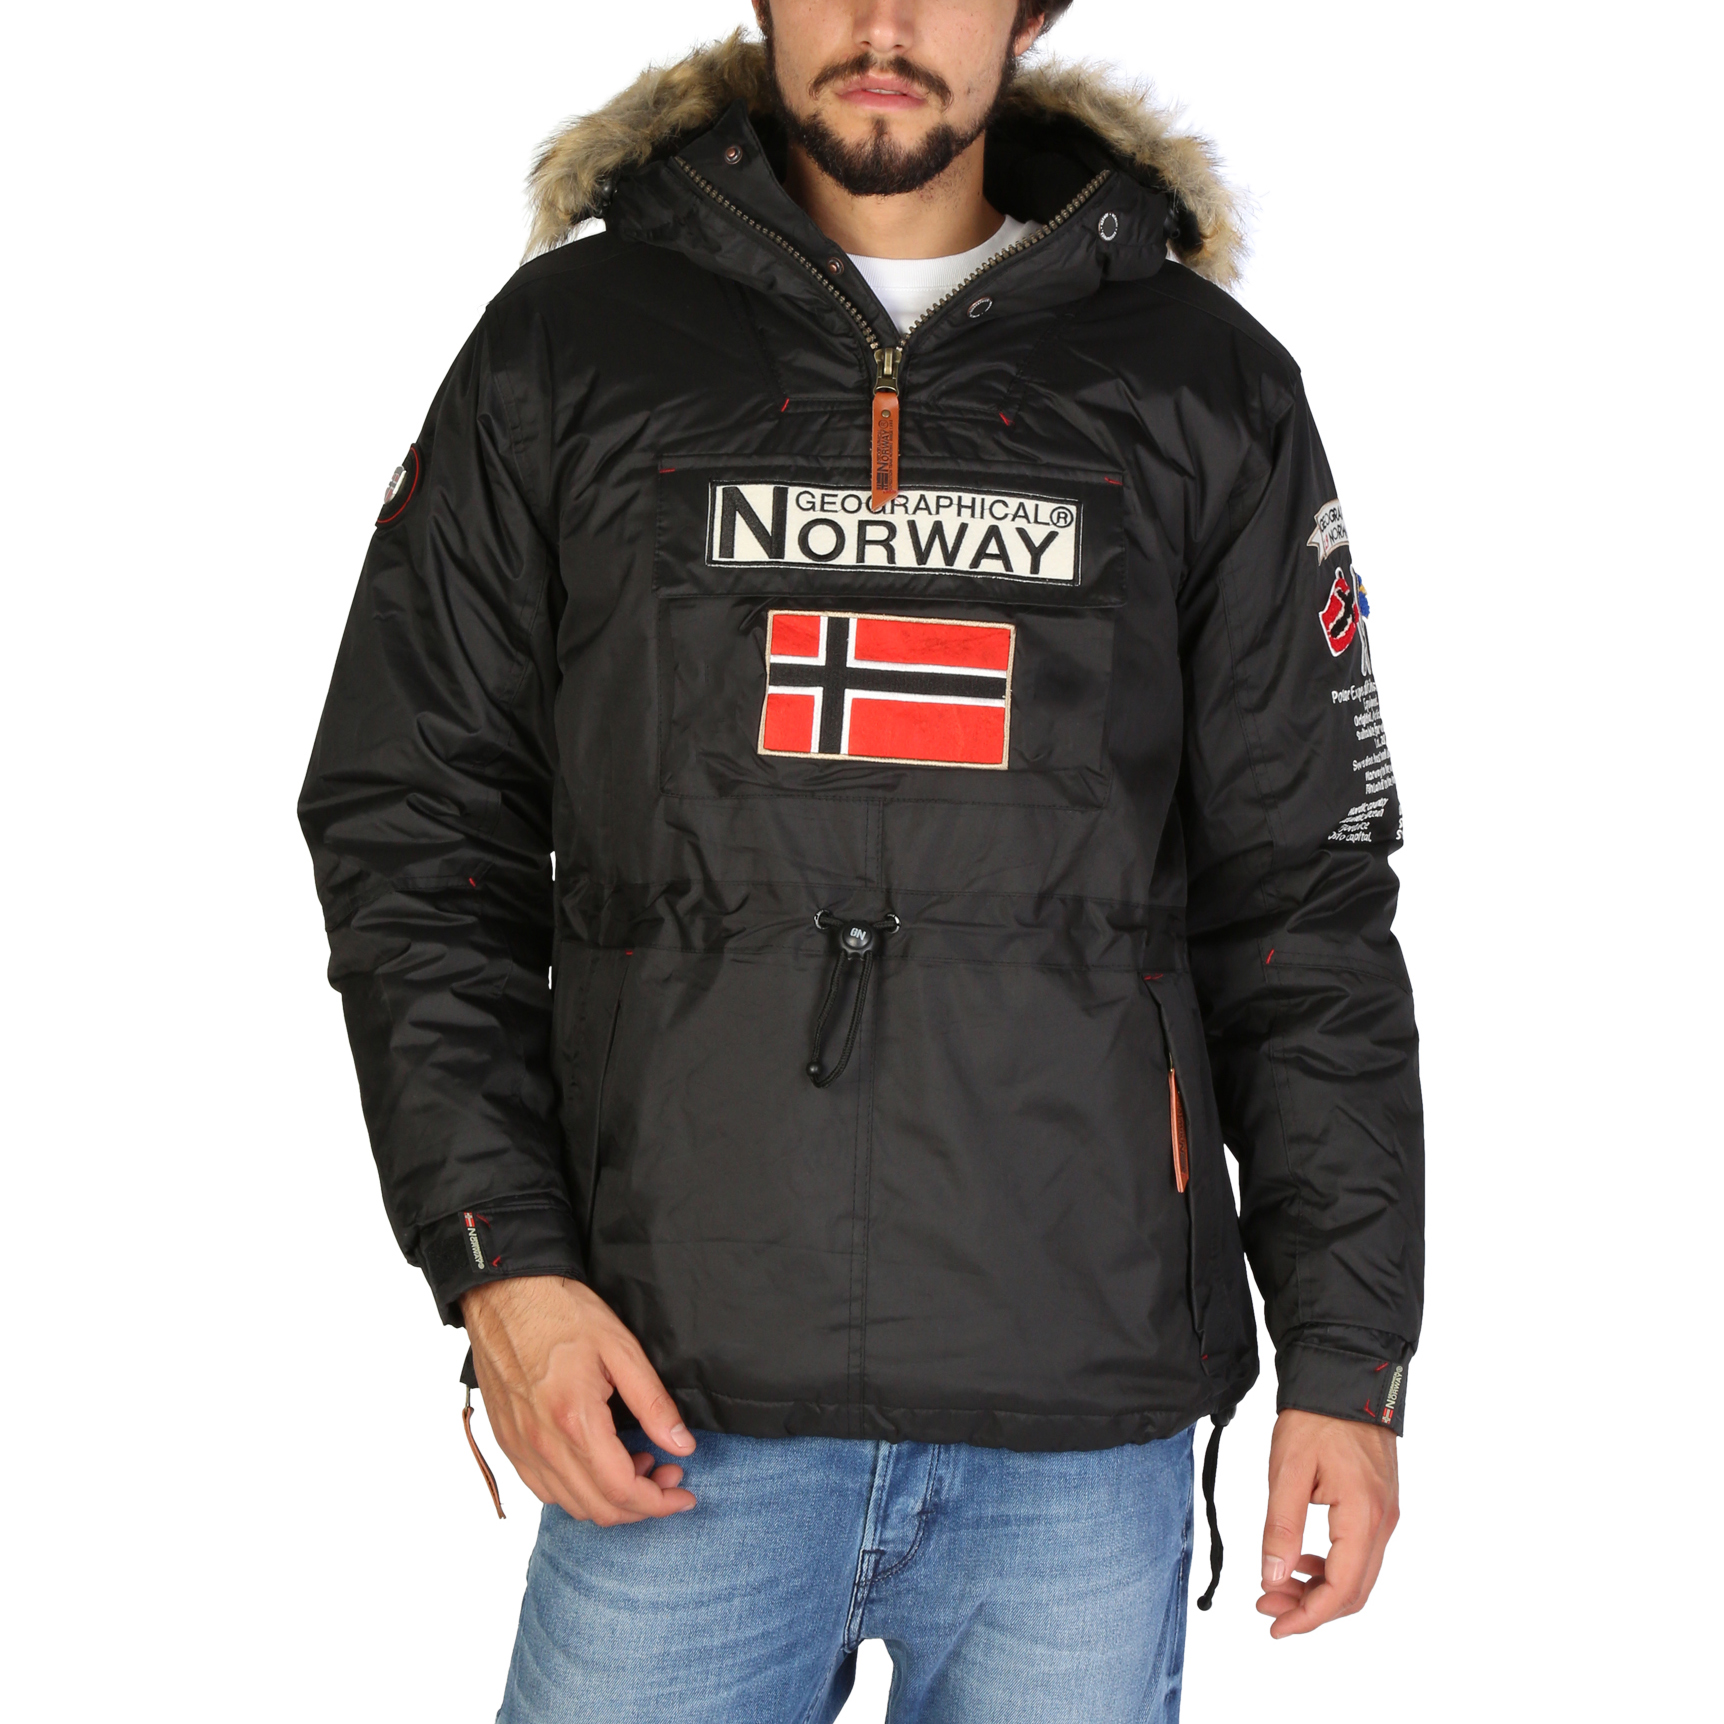 Dónde comprar chaqueta - Geographical Norway ®